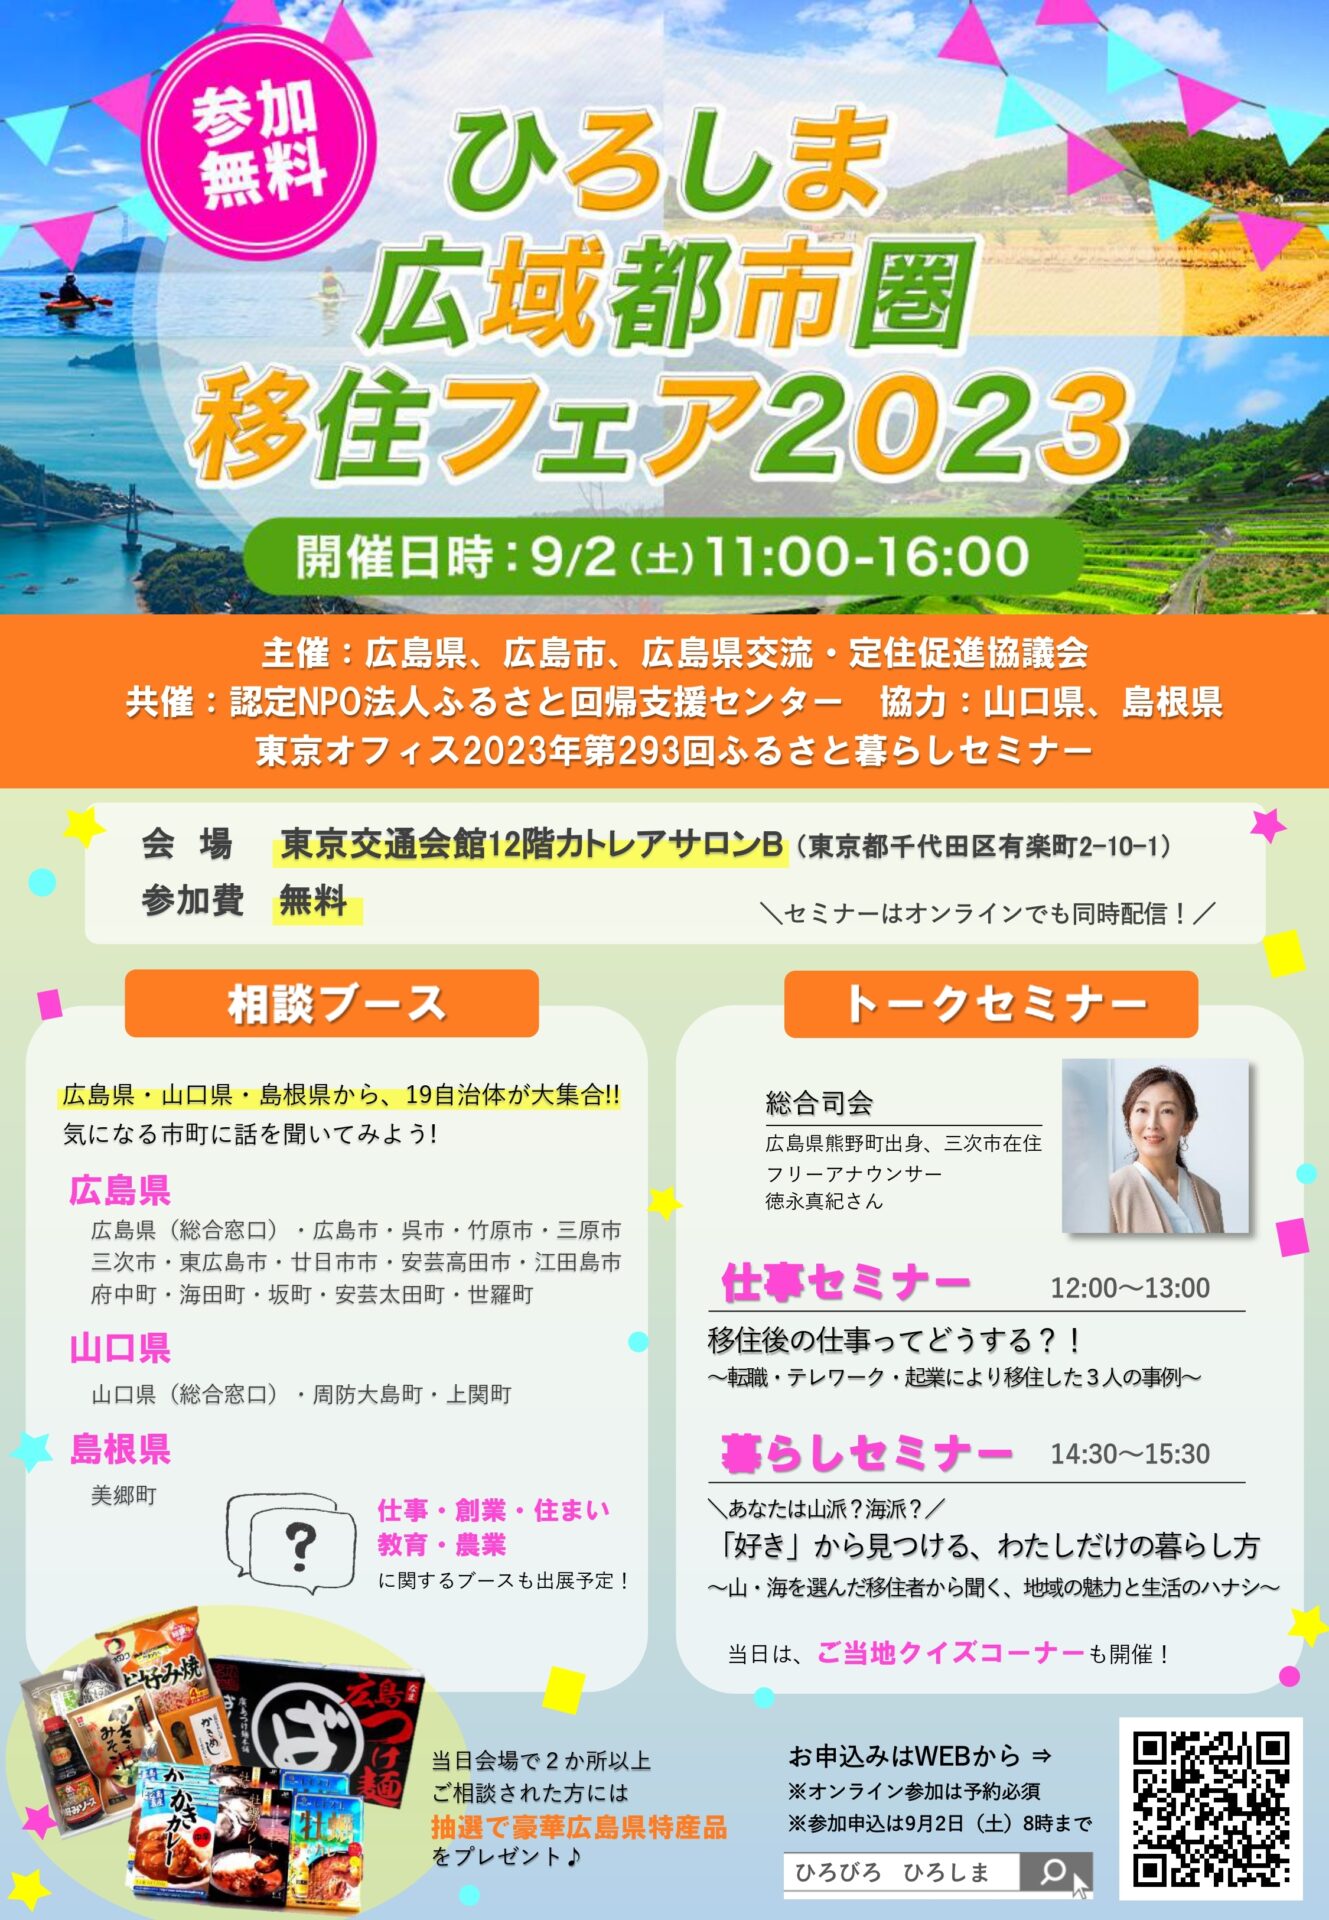 広島・山口・島根の19市町が大集合！「ひろしま広域都市圏 移住フェア2023」に出展します！